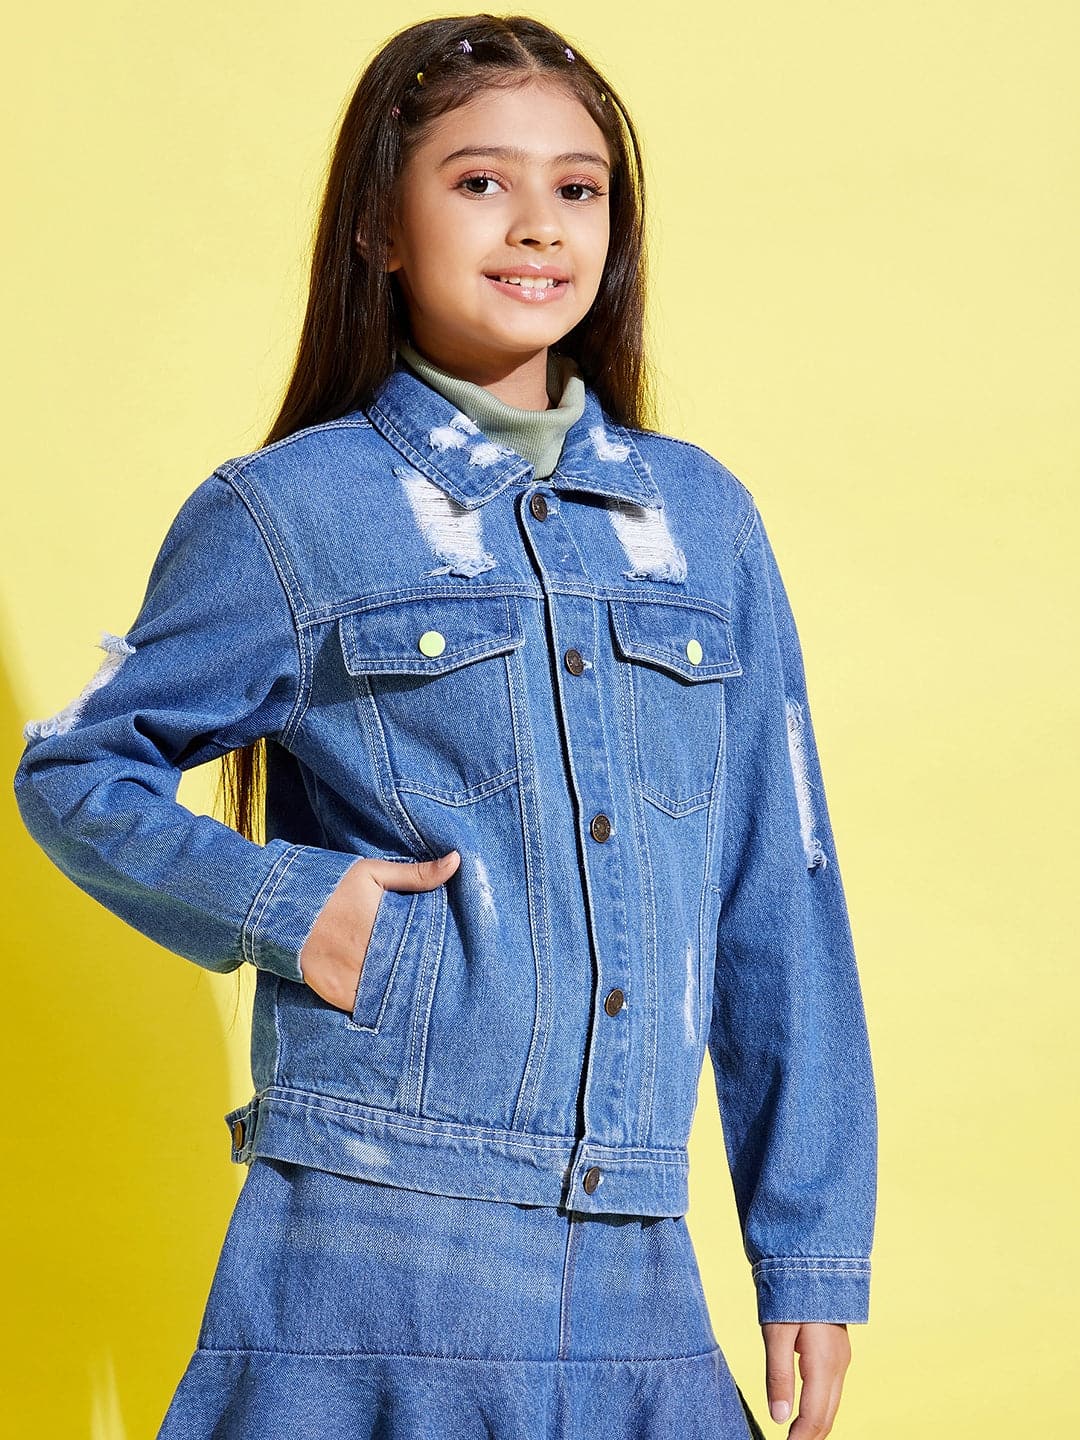 Lyush Blue Distressed Neon Button Denim Jacket For Girls - Distacart